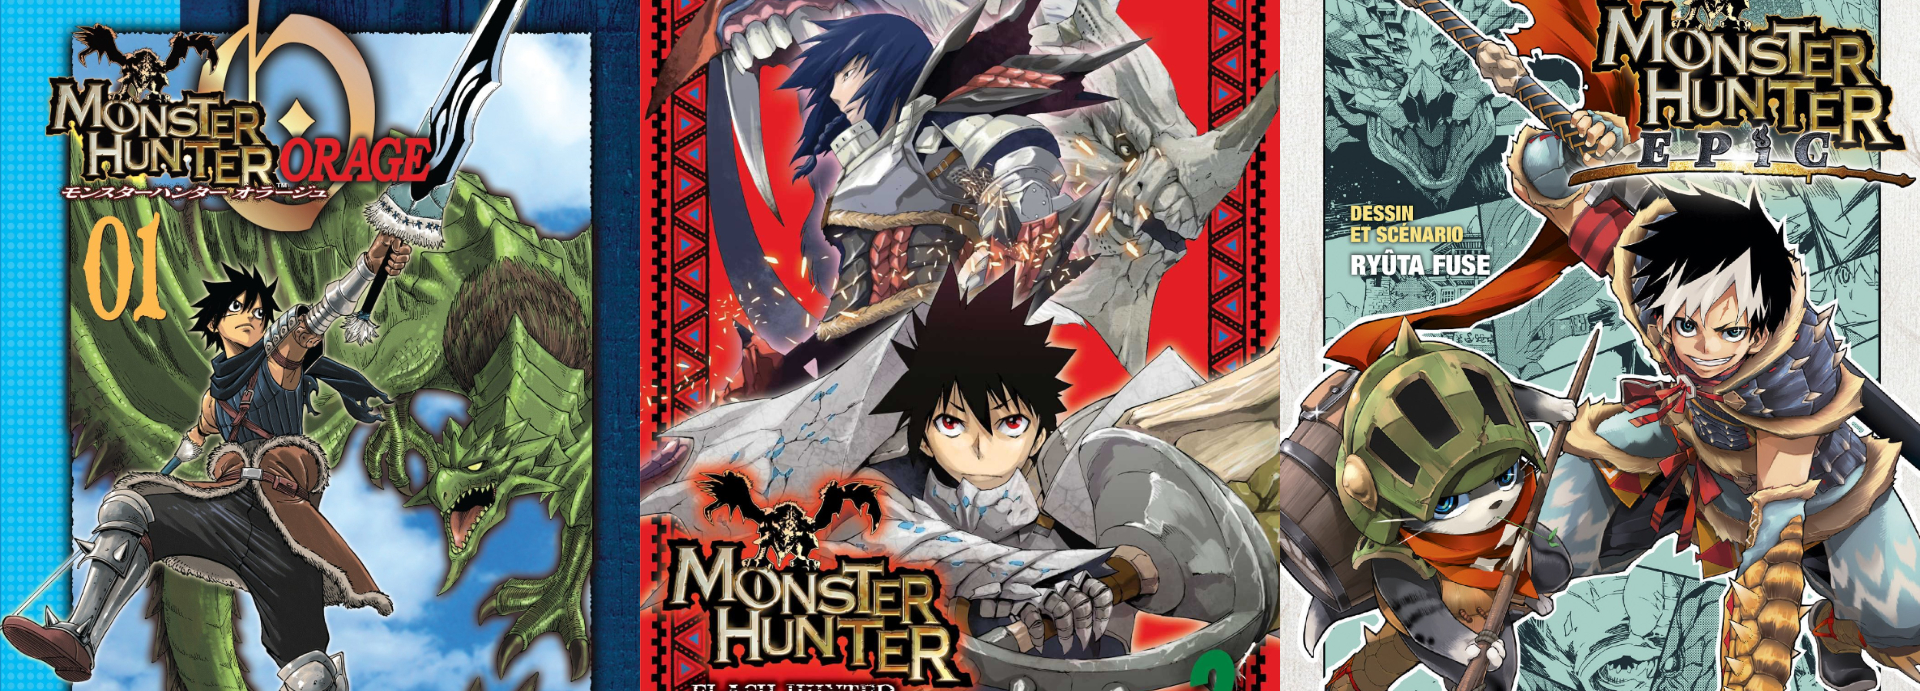 Monster Hunter Stories anime adaptation announced for 2016